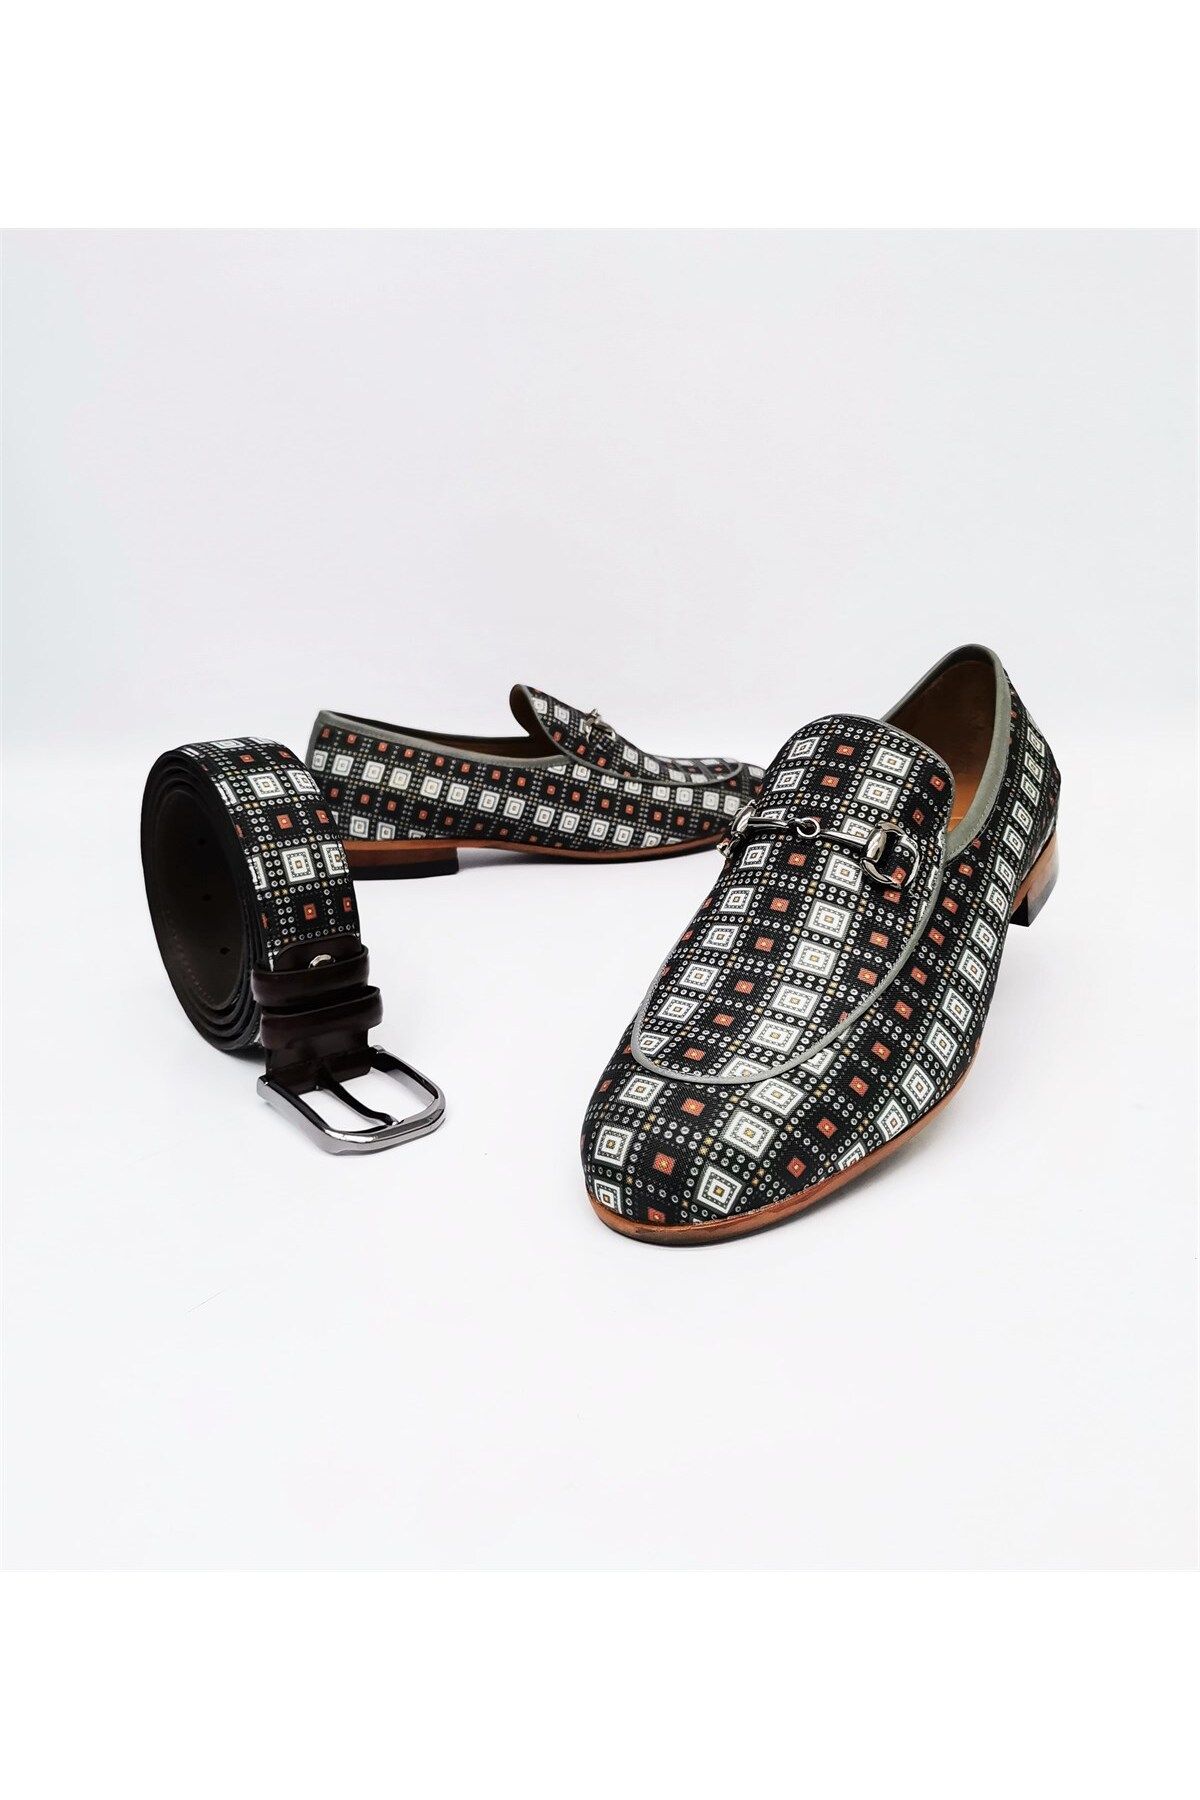 CassidoShoes Hakiki Deri Siyah Beyaz Kareli Zincir Detaylı Erkek Keten Ayakkabı Ve Kemer Set 022-3233